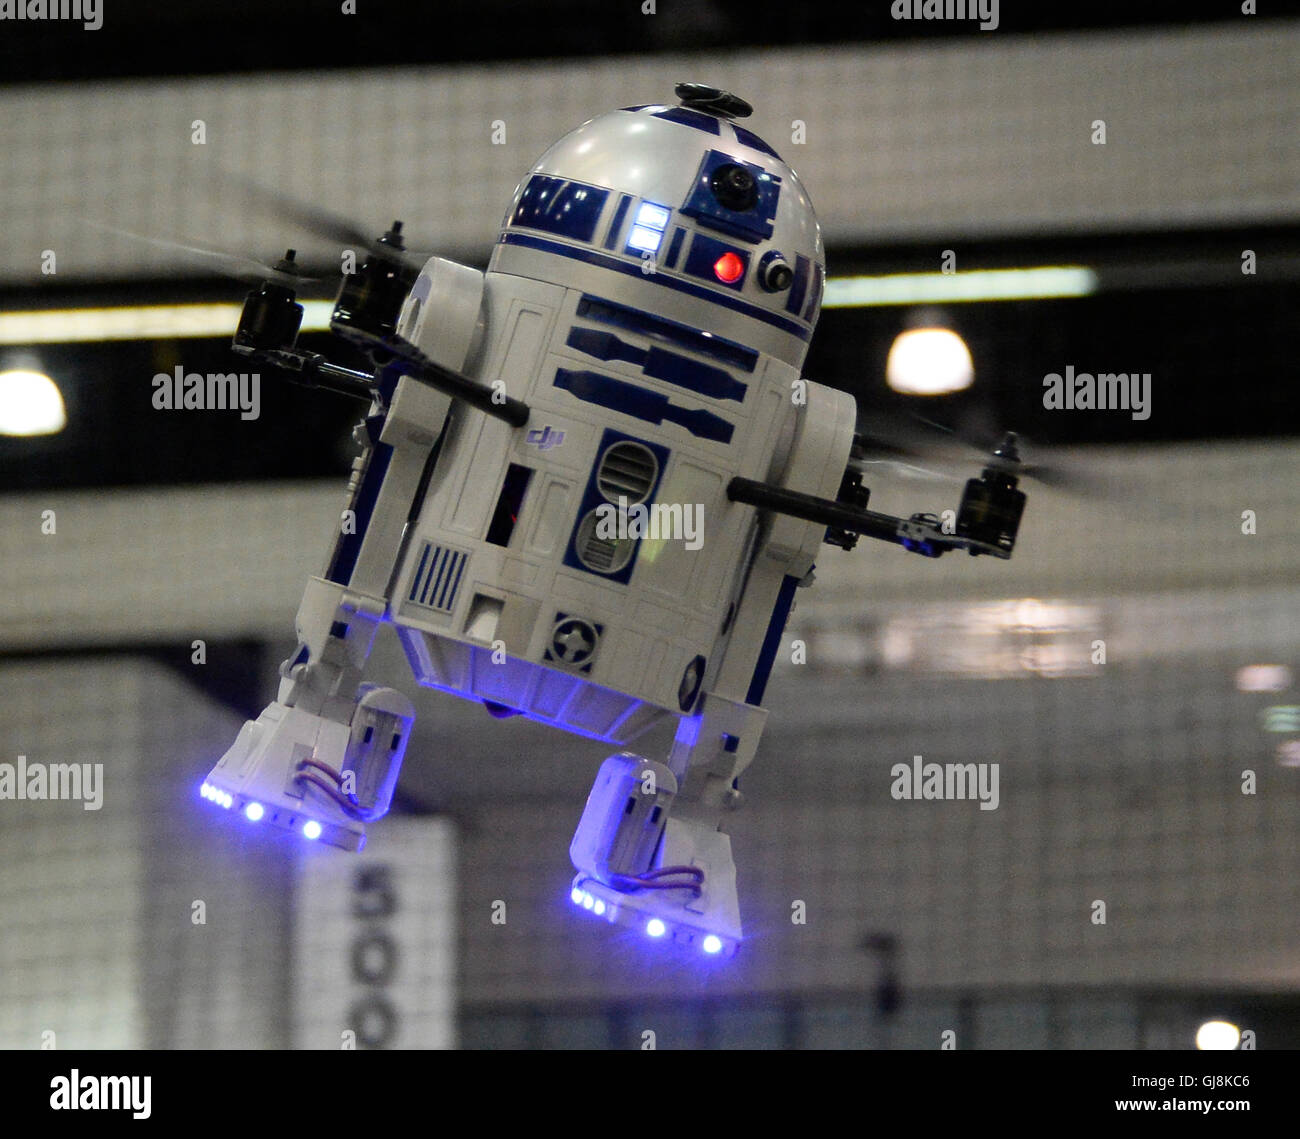 Archivo. 13 Aug, 2016. El actor británico que tocaba R2-D2 en las películas  de Star Wars ha fallecido a la edad de 83 años tras una larga enfermedad.  KENNY Baker, quien fue